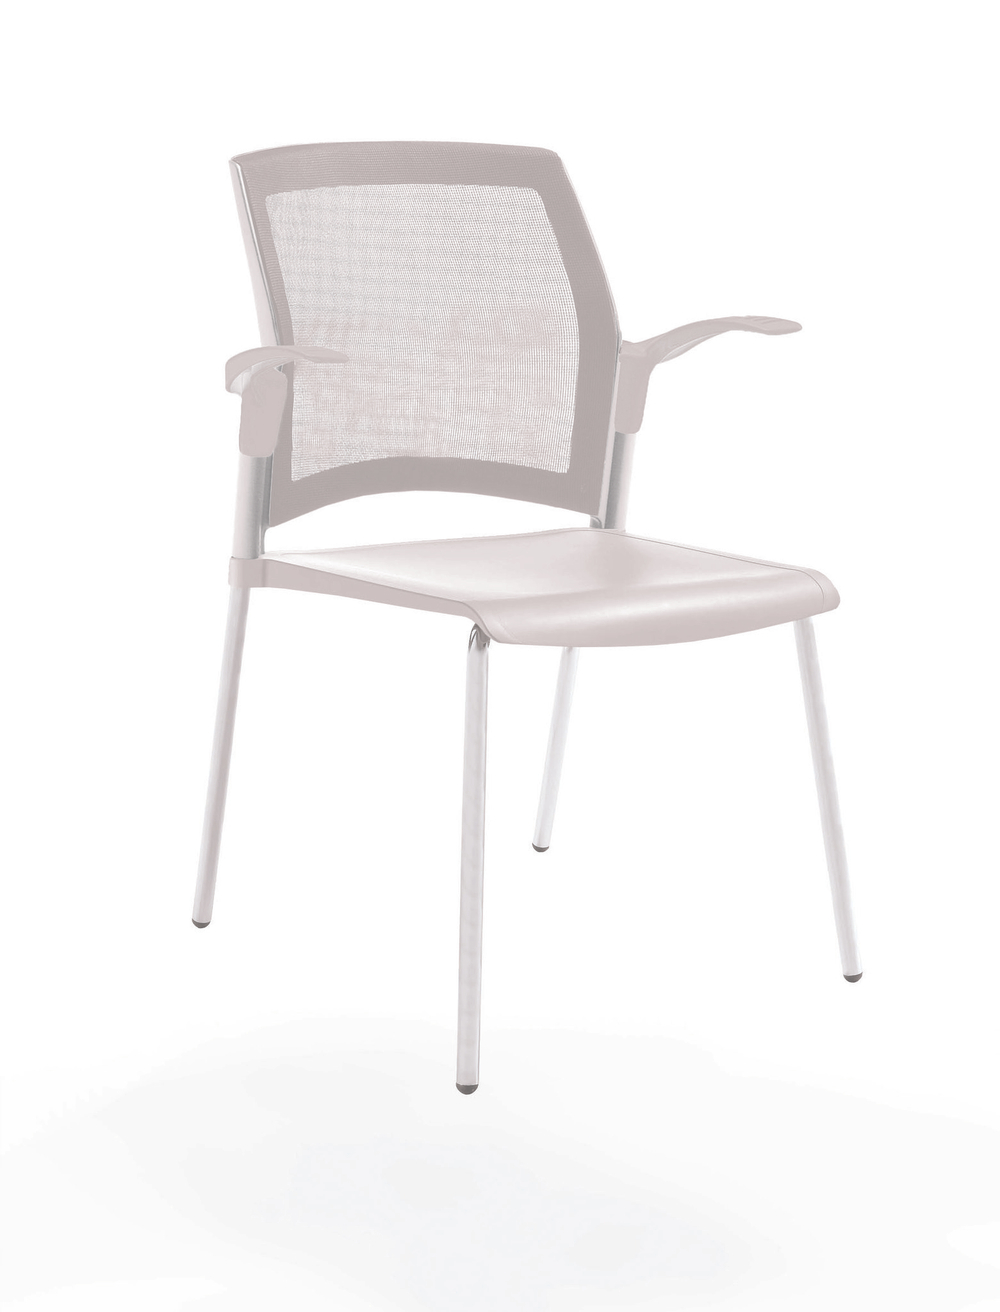 стул Rewind на 4 ногах, каркас белый, пластик белый, спинка-сетка, с открытыми подлокотниками